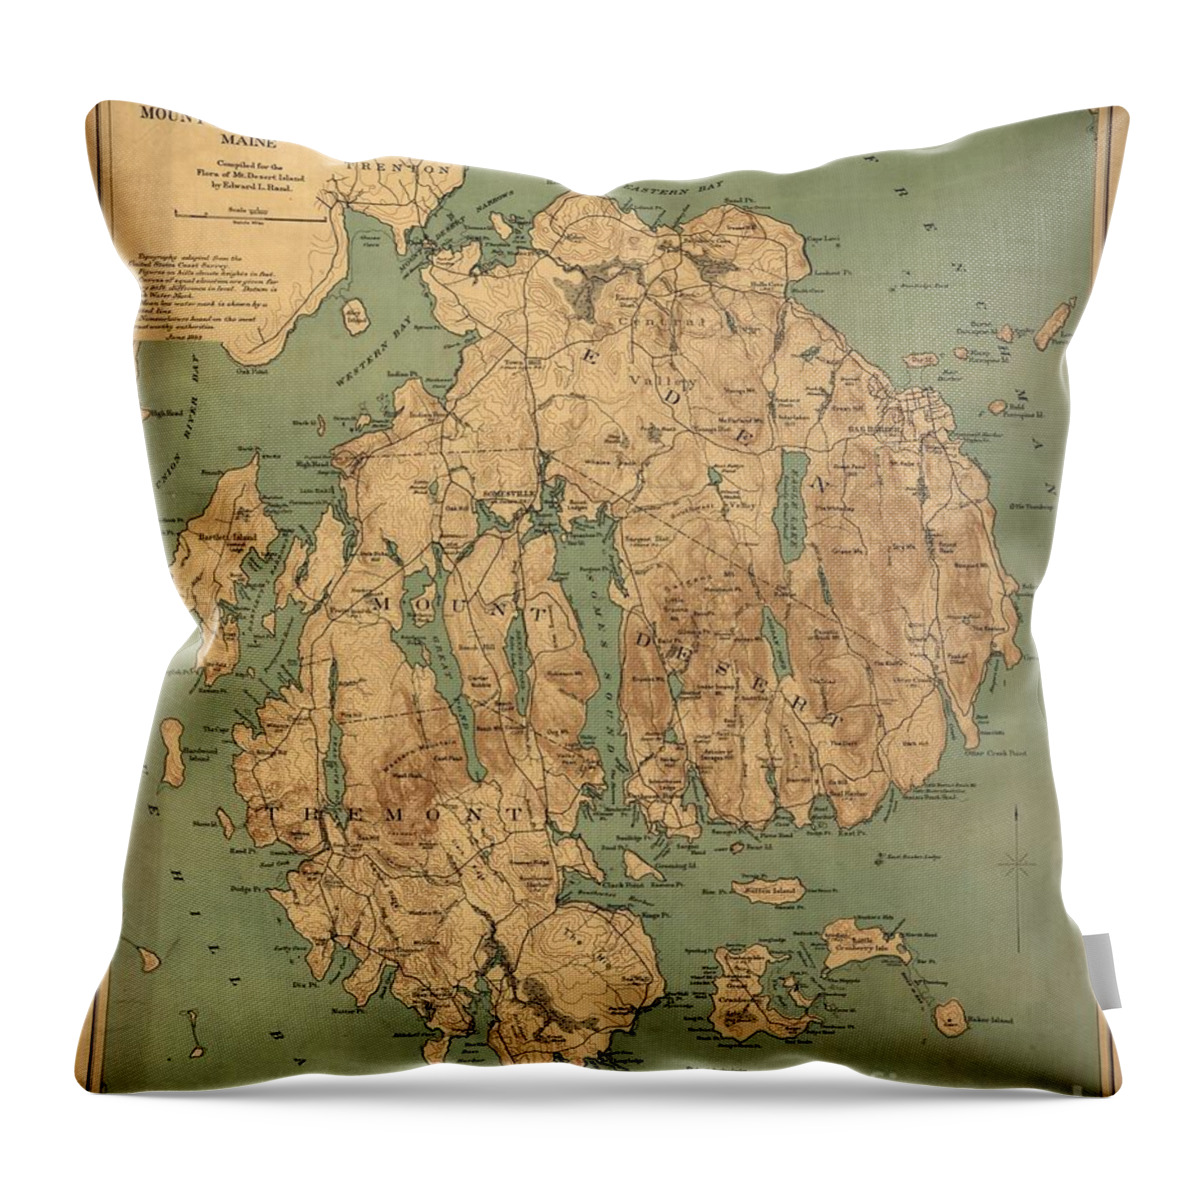 Map Of Mount Desert Island Throw Pillow featuring the painting Map of Mount Desert Island by MotionAge Designs